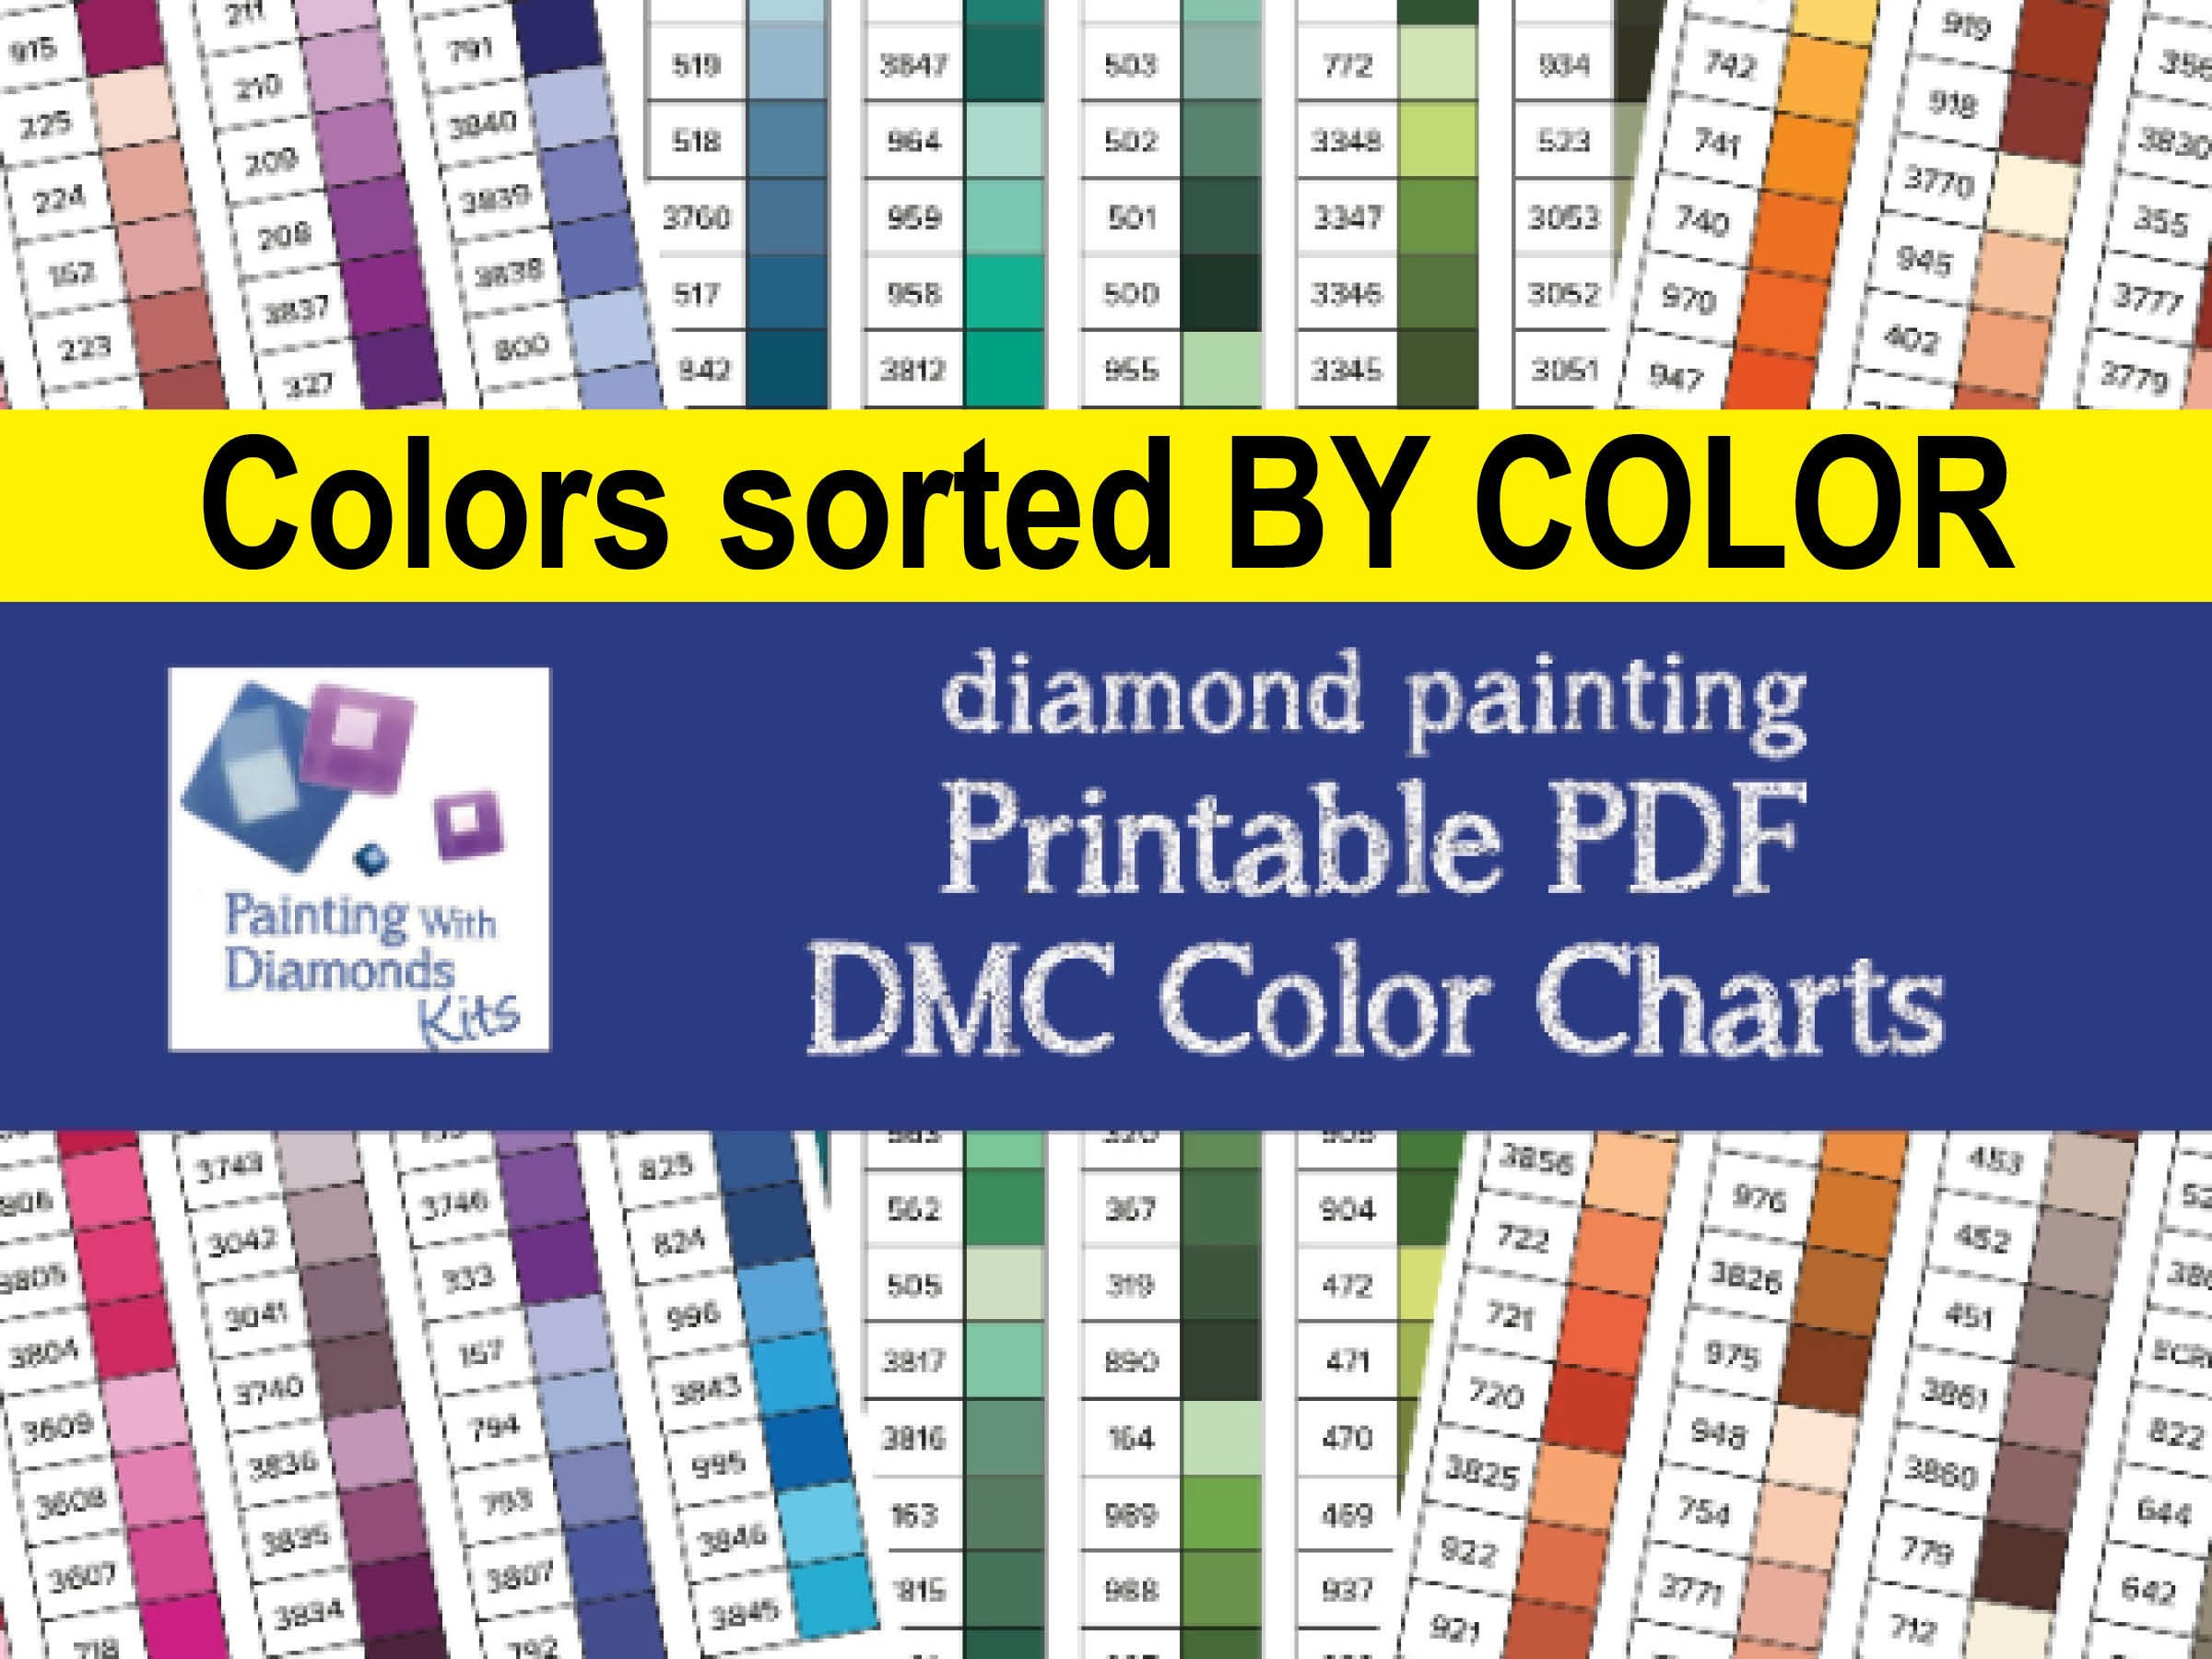 dmc-color-list-printable-dmc-floss-color-chart-printable-pdf-download